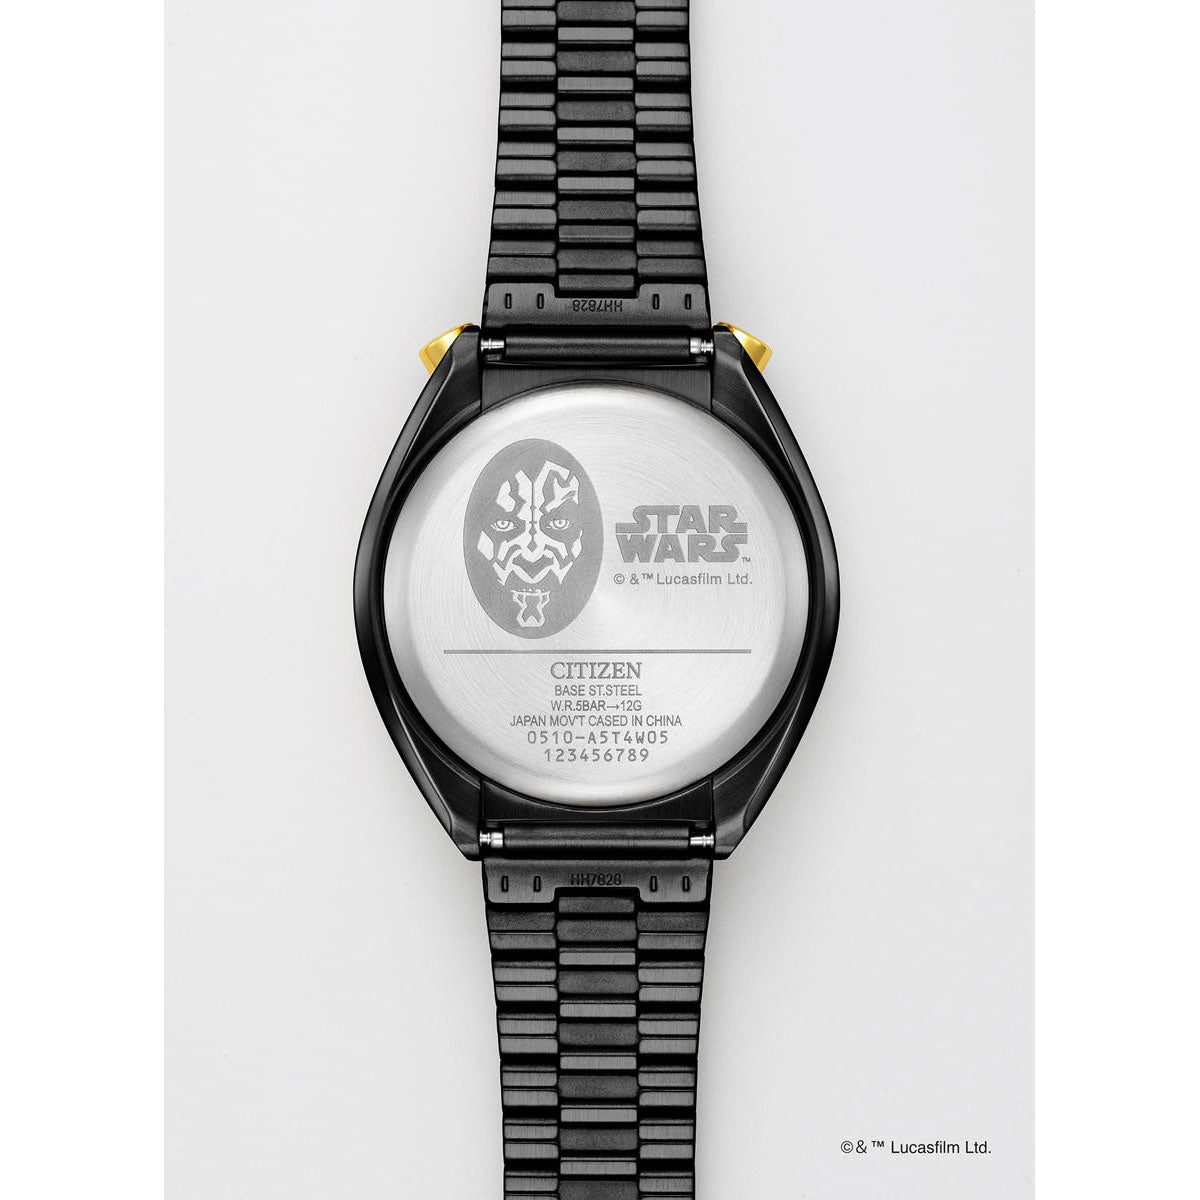 シチズン レコードレーベル ツノクロノ スター・ウォーズ 特定店取扱 限定 ｢DARTH MAUL（ダース・モール）｣ 腕時計 AN3668-55W CITIZEN RECORD LABEL TSUNO CHRONO STAR WARS